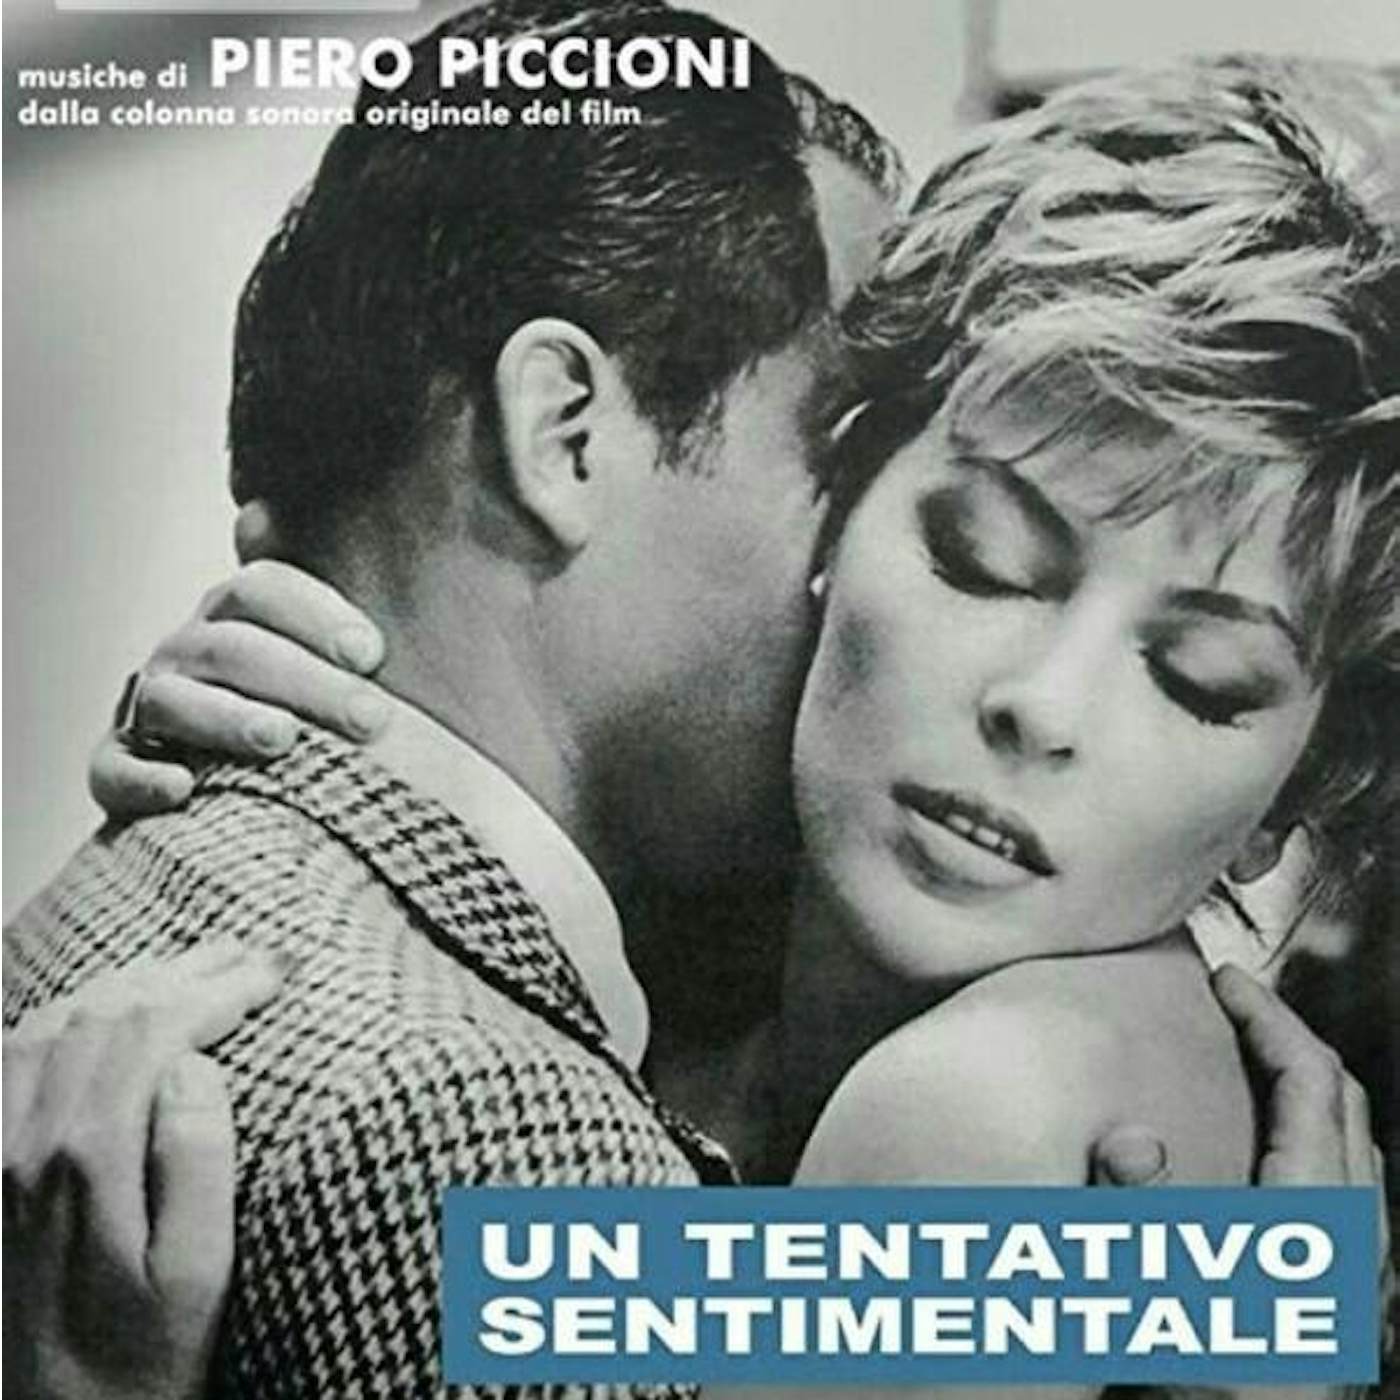 Piero Piccioni UN TENTATIVO SENTIMENTALE / Original Soundtrack Vinyl Record